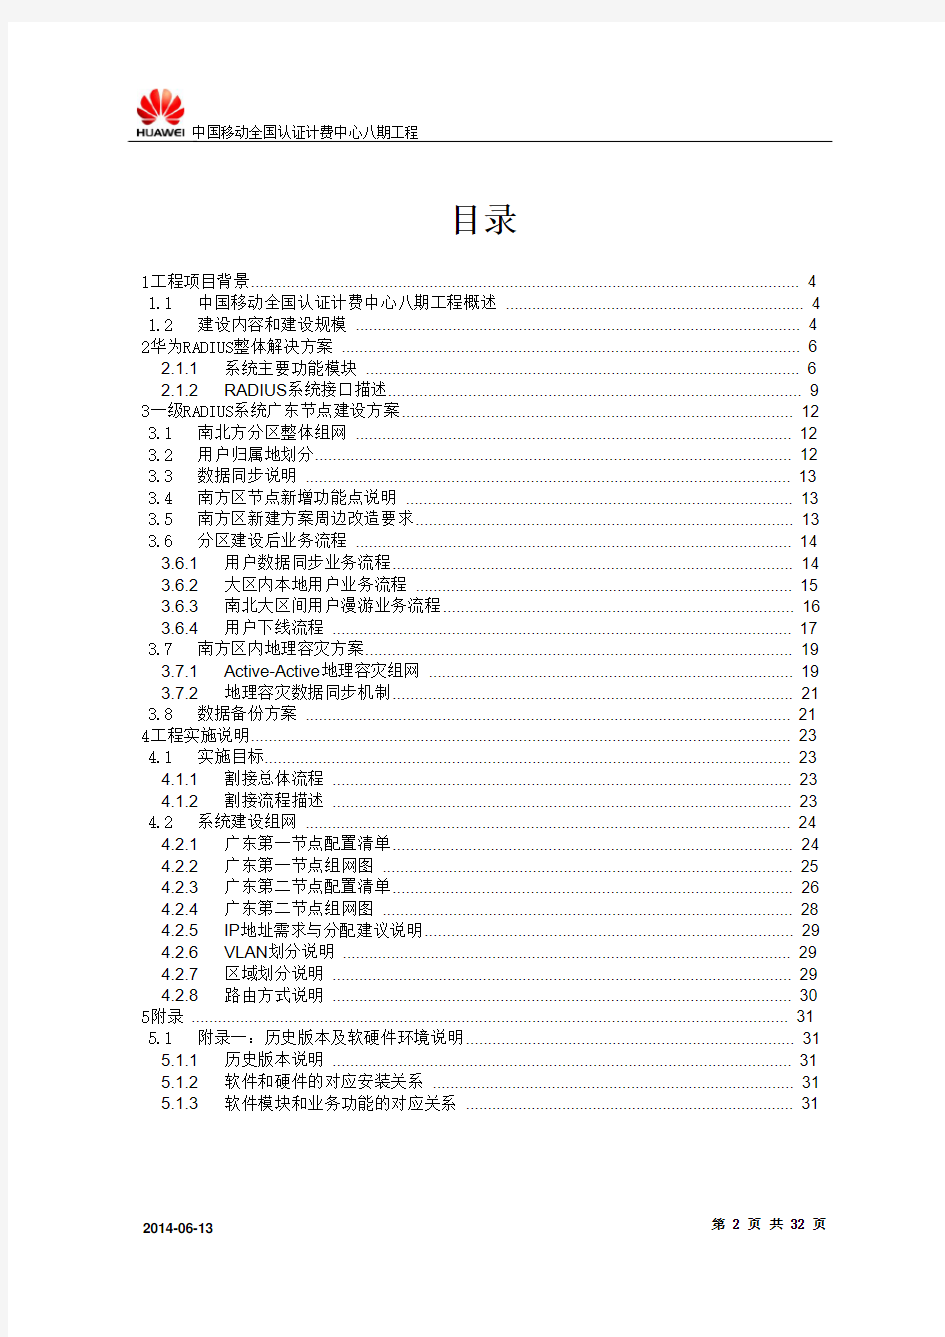 中国移动全国认证计费中心八期工程广东节点项目技术建议书 - V1.1